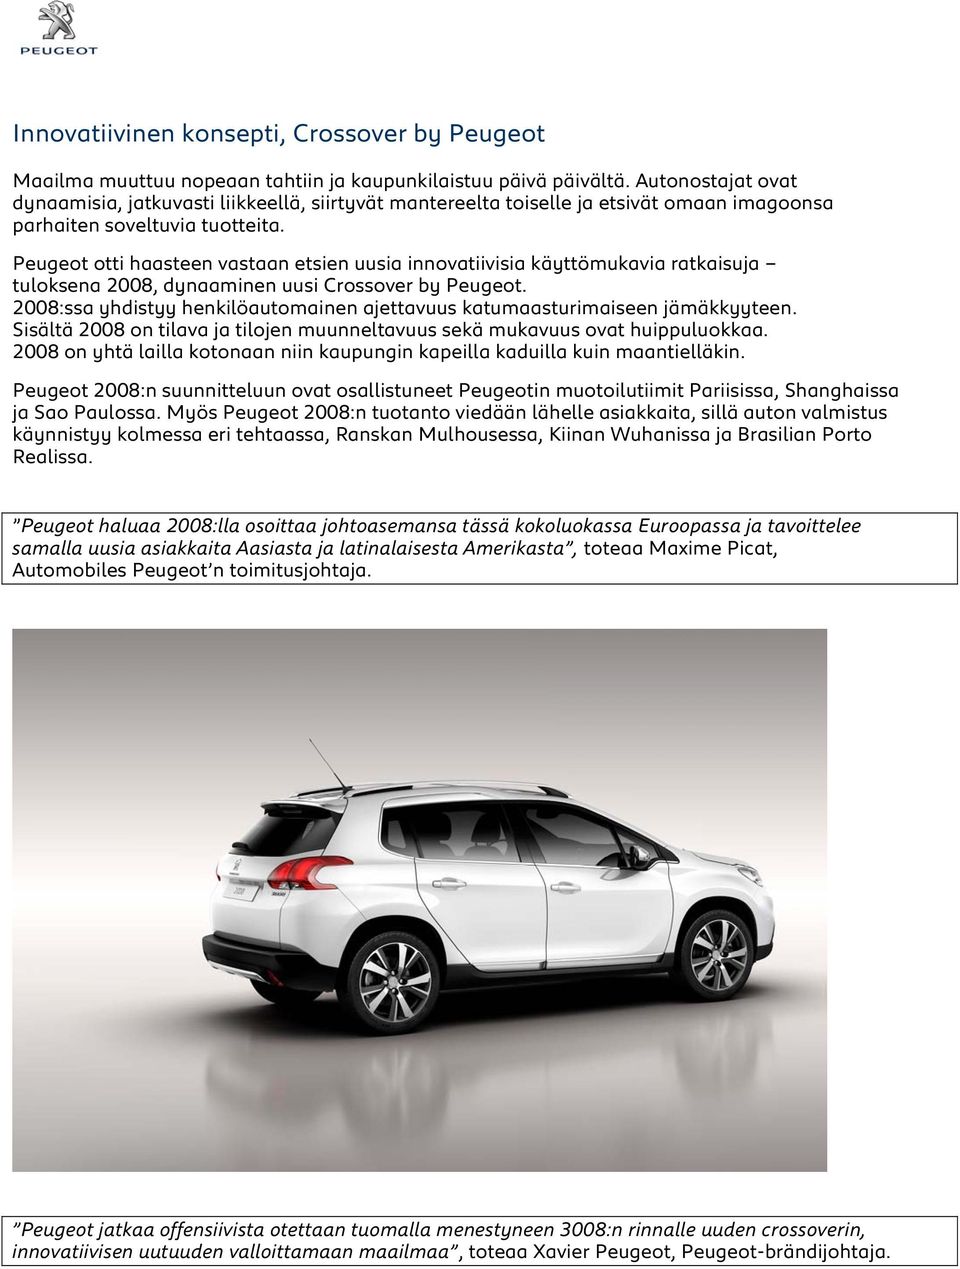 Peugeot otti haasteen vastaan etsien uusia innovatiivisia käyttömukavia ratkaisuja tuloksena 2008, dynaaminen uusi Crossover by Peugeot.